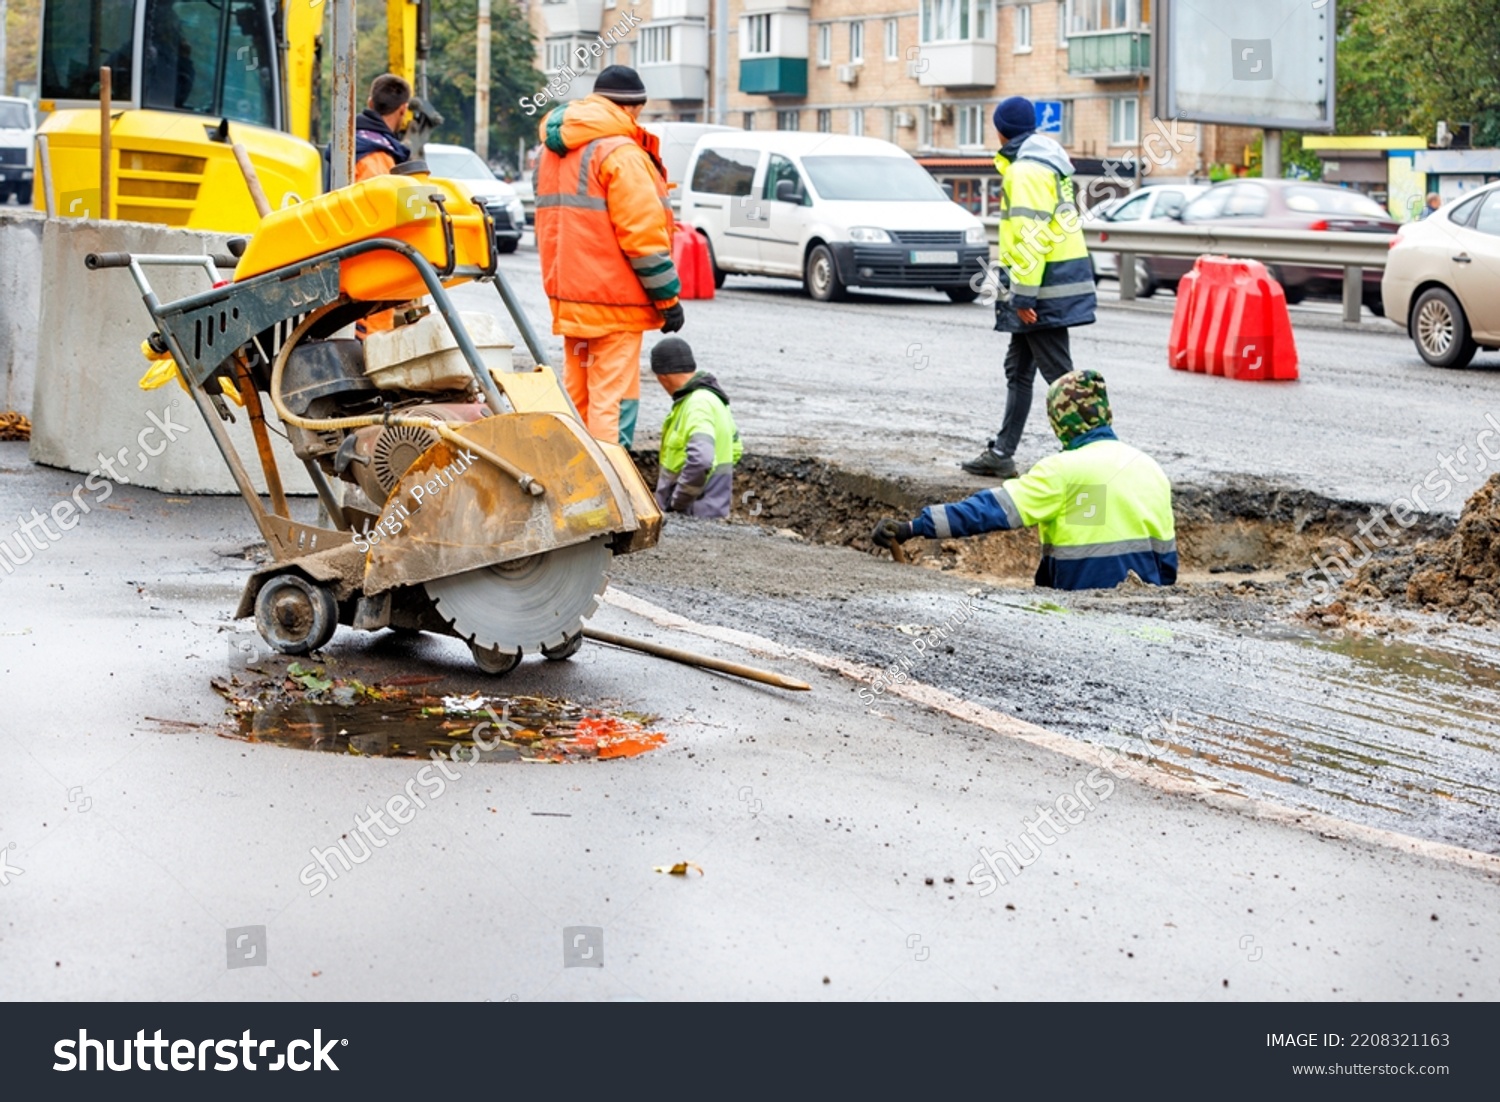 6,441 Road Drain Repair Images, Stock Photos & Vectors | Shutterstock